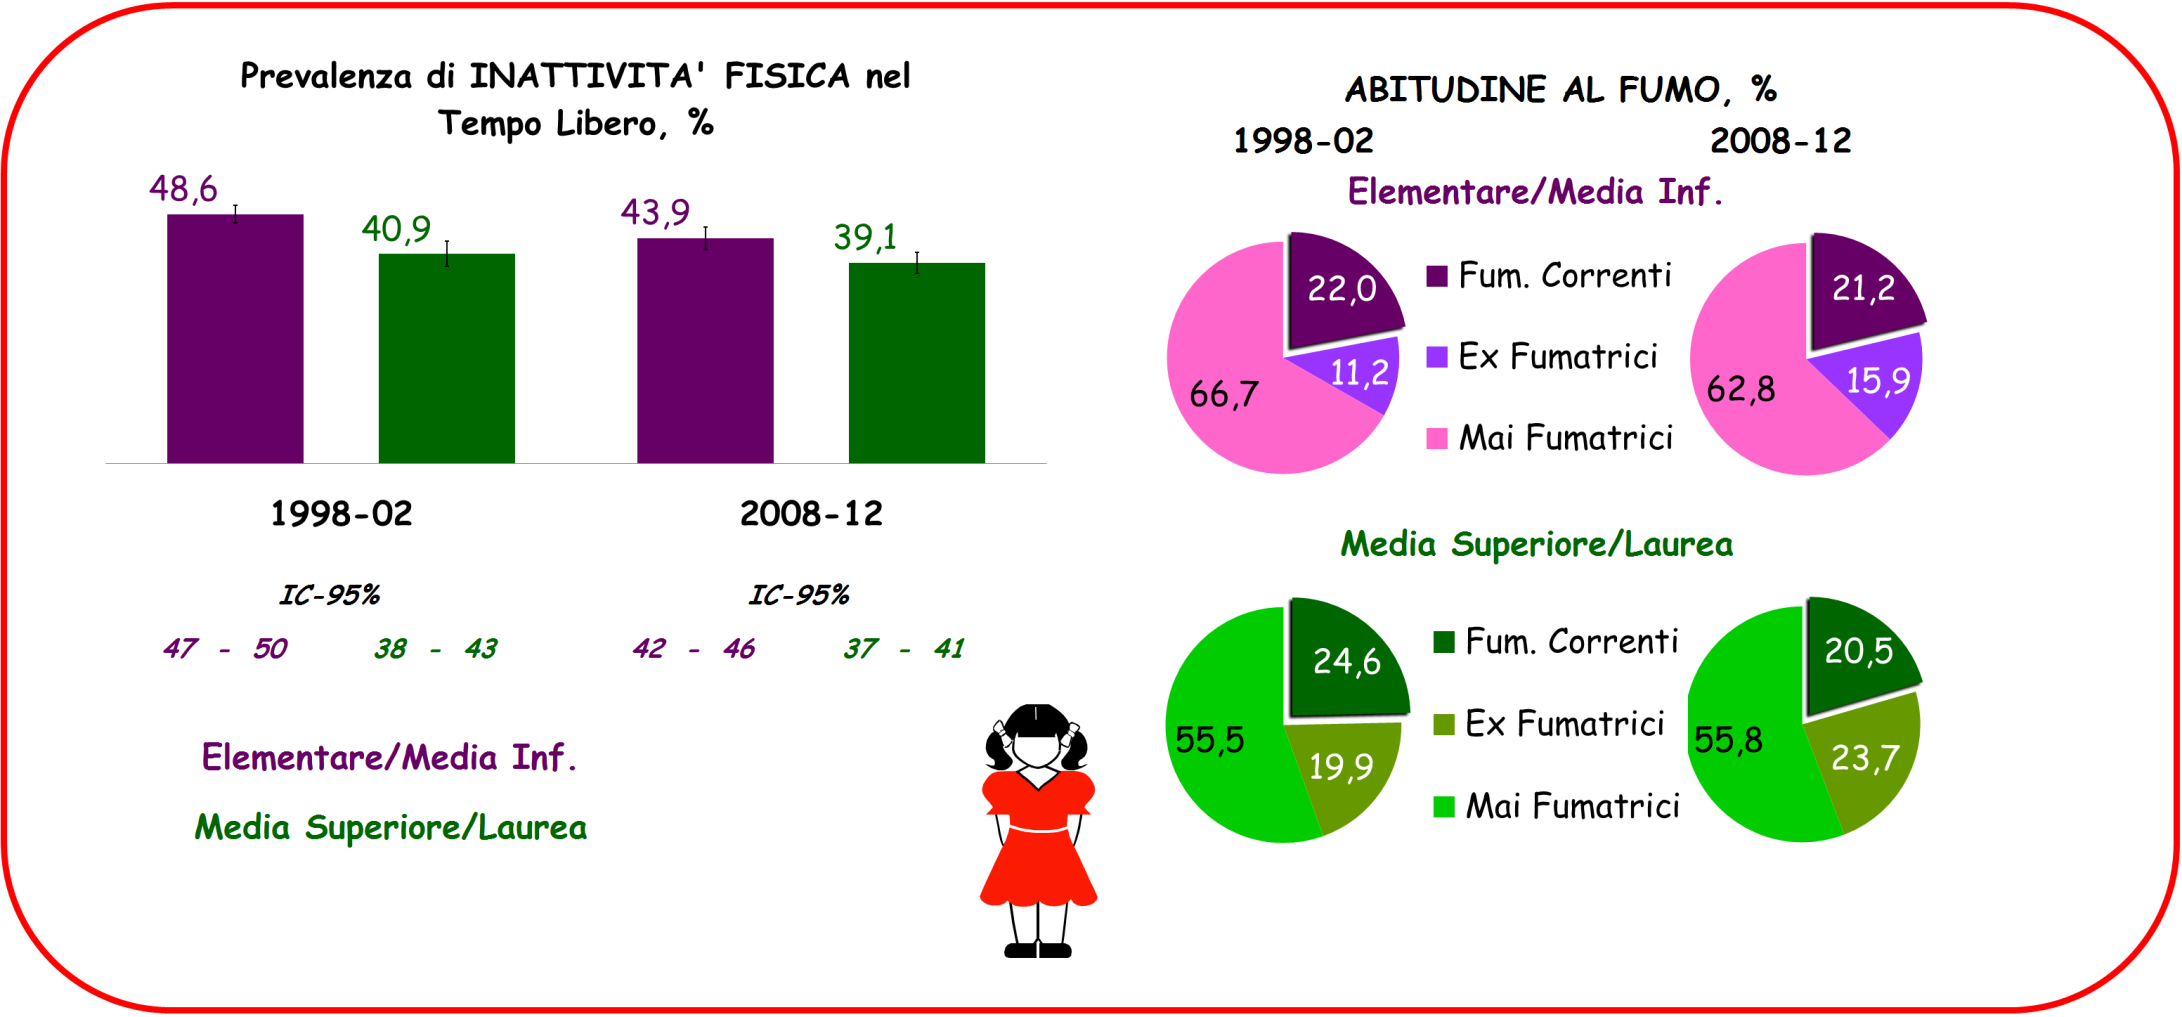 STILI DI VITA: Confronto tra 1998-2002 e 2008-2012; Età, 35-74 anni.